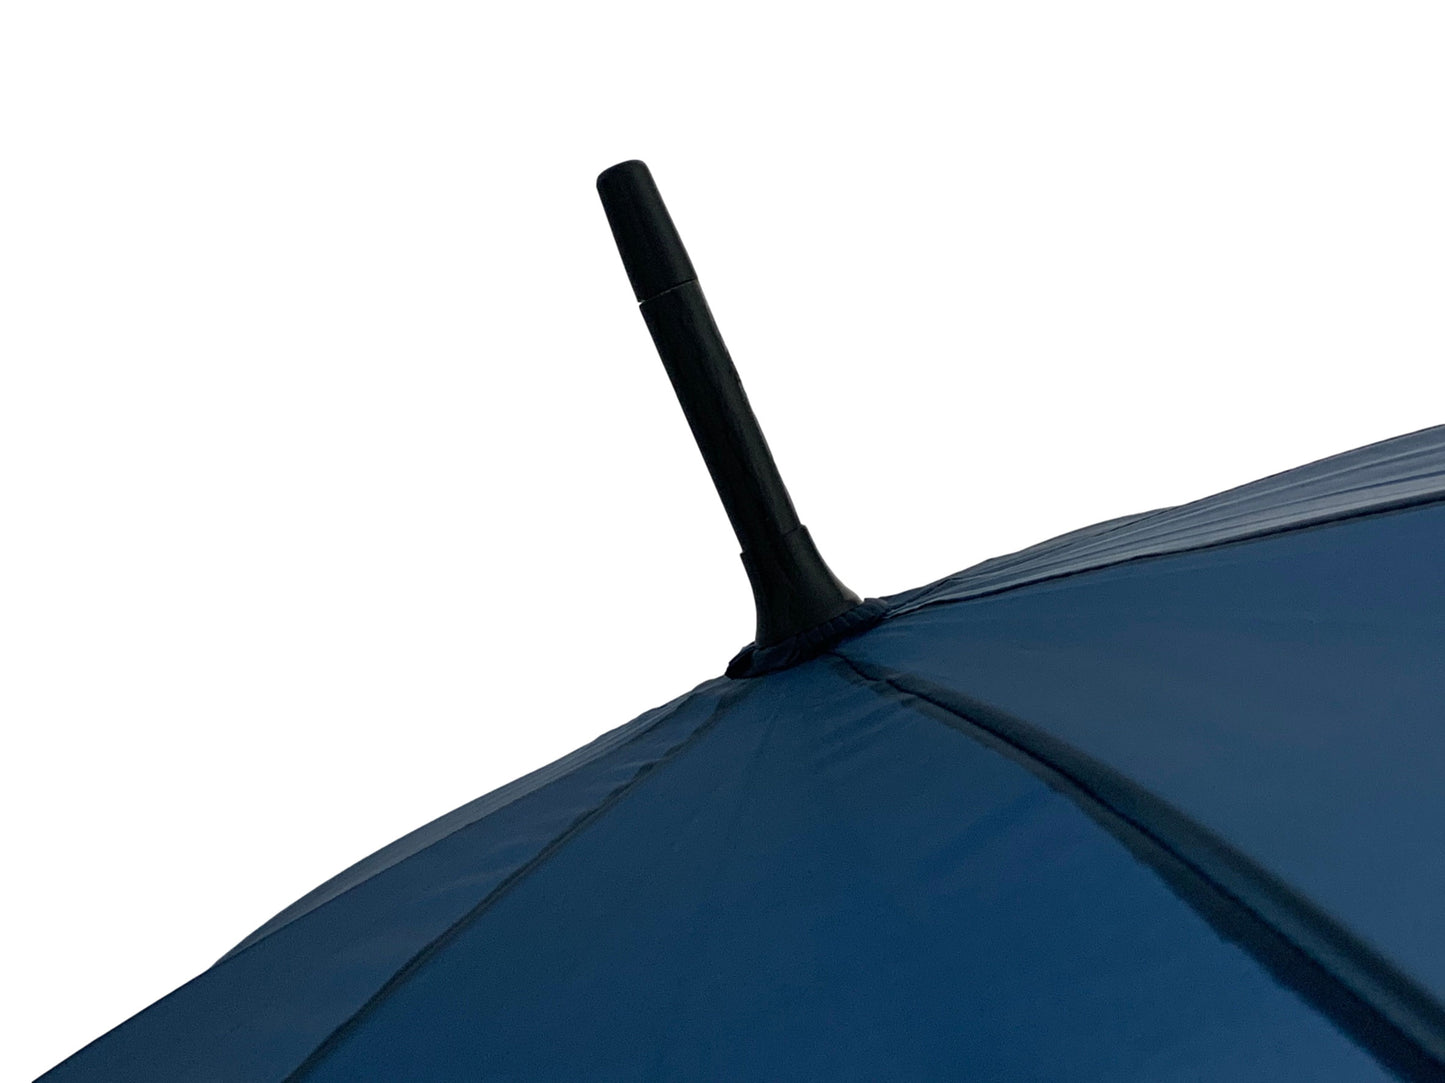 Μπλε μαρίν ομπρέλα βροχής, από αθρακόνημα.